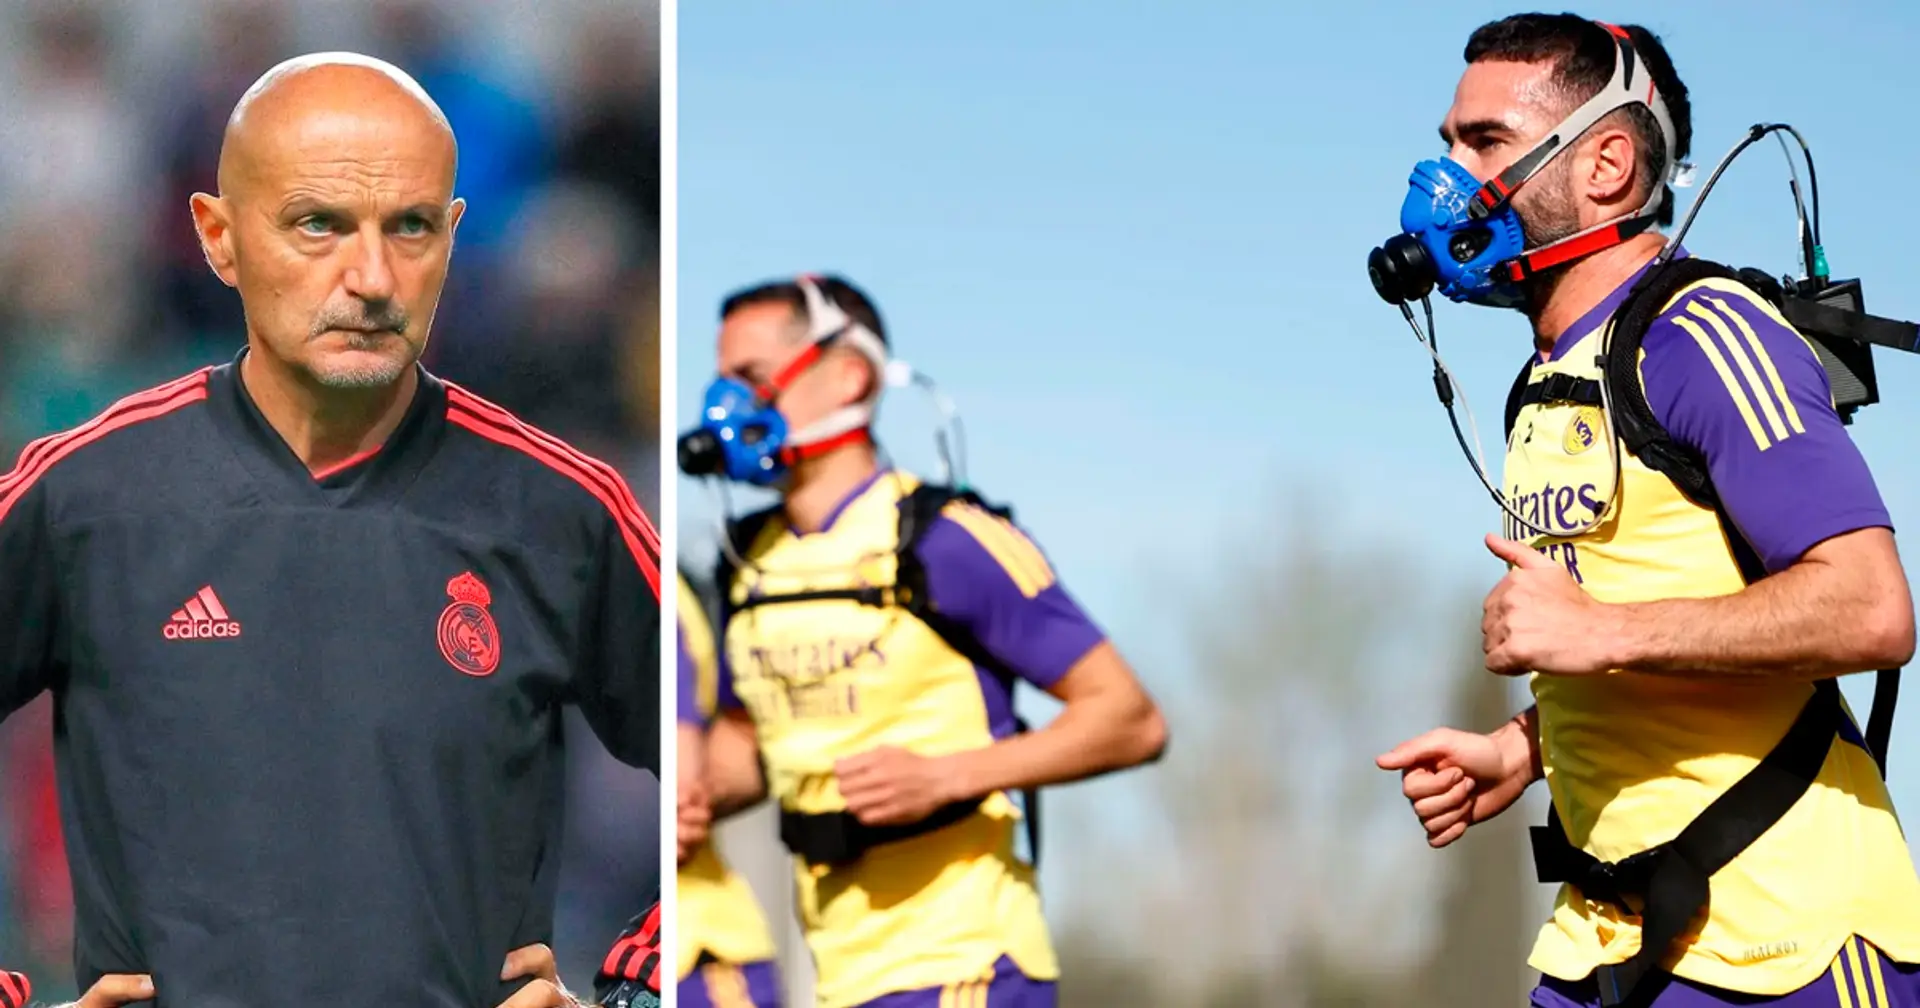 Por qué los jugadores del Real Madrid usan máscaras futuristas en los entrenamientos: explicado